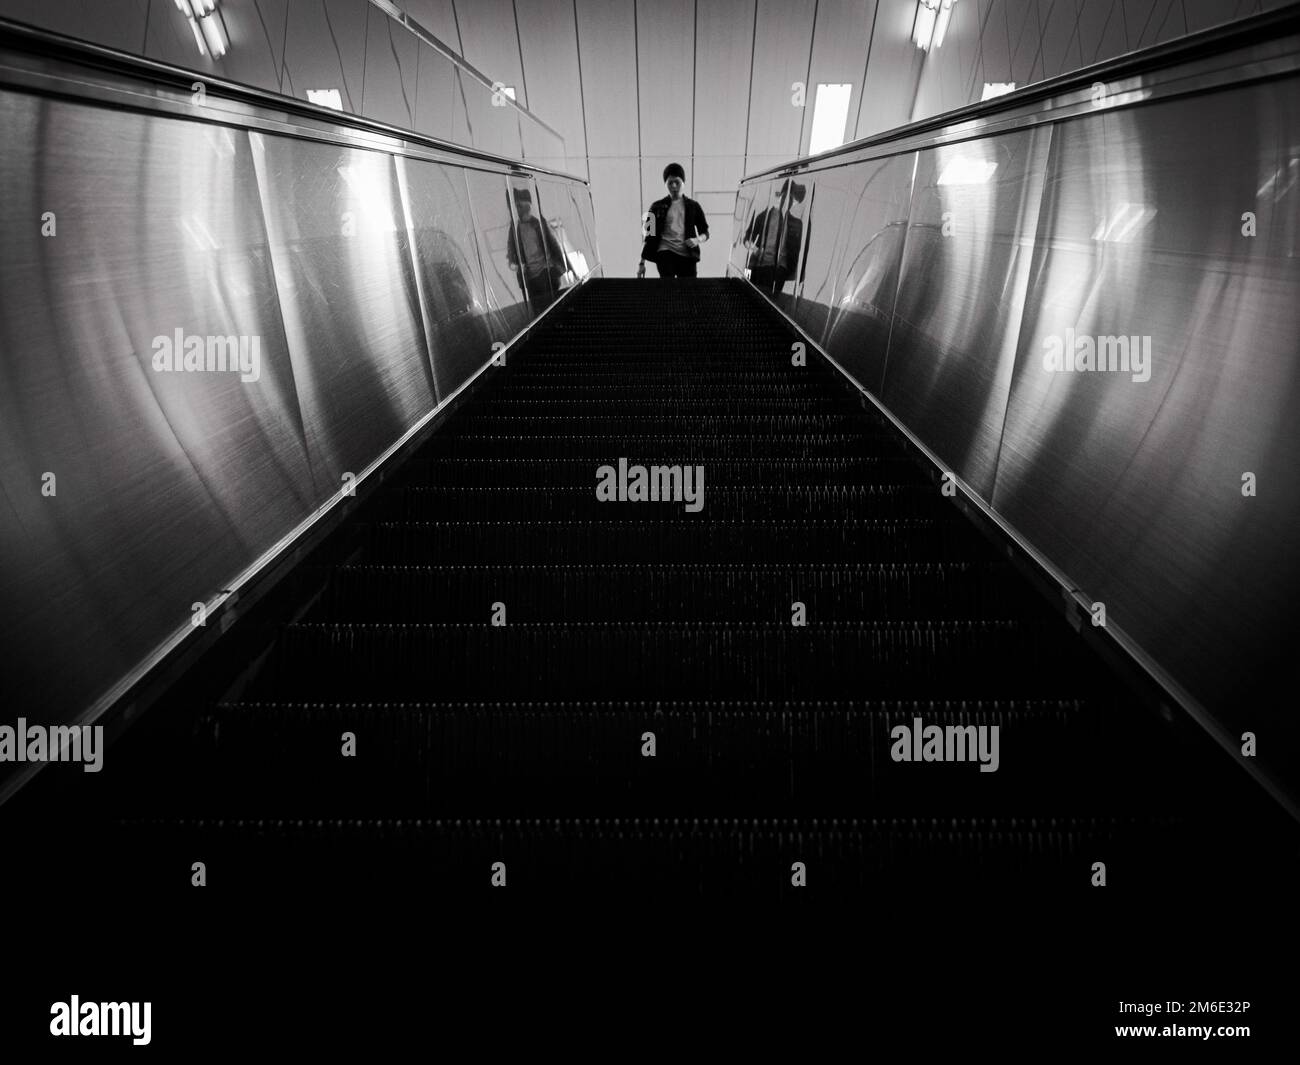 Tokio, Japan - 17 11 19: Ein Mann, der eine Rolltreppe heruntergehen wird Stockfoto